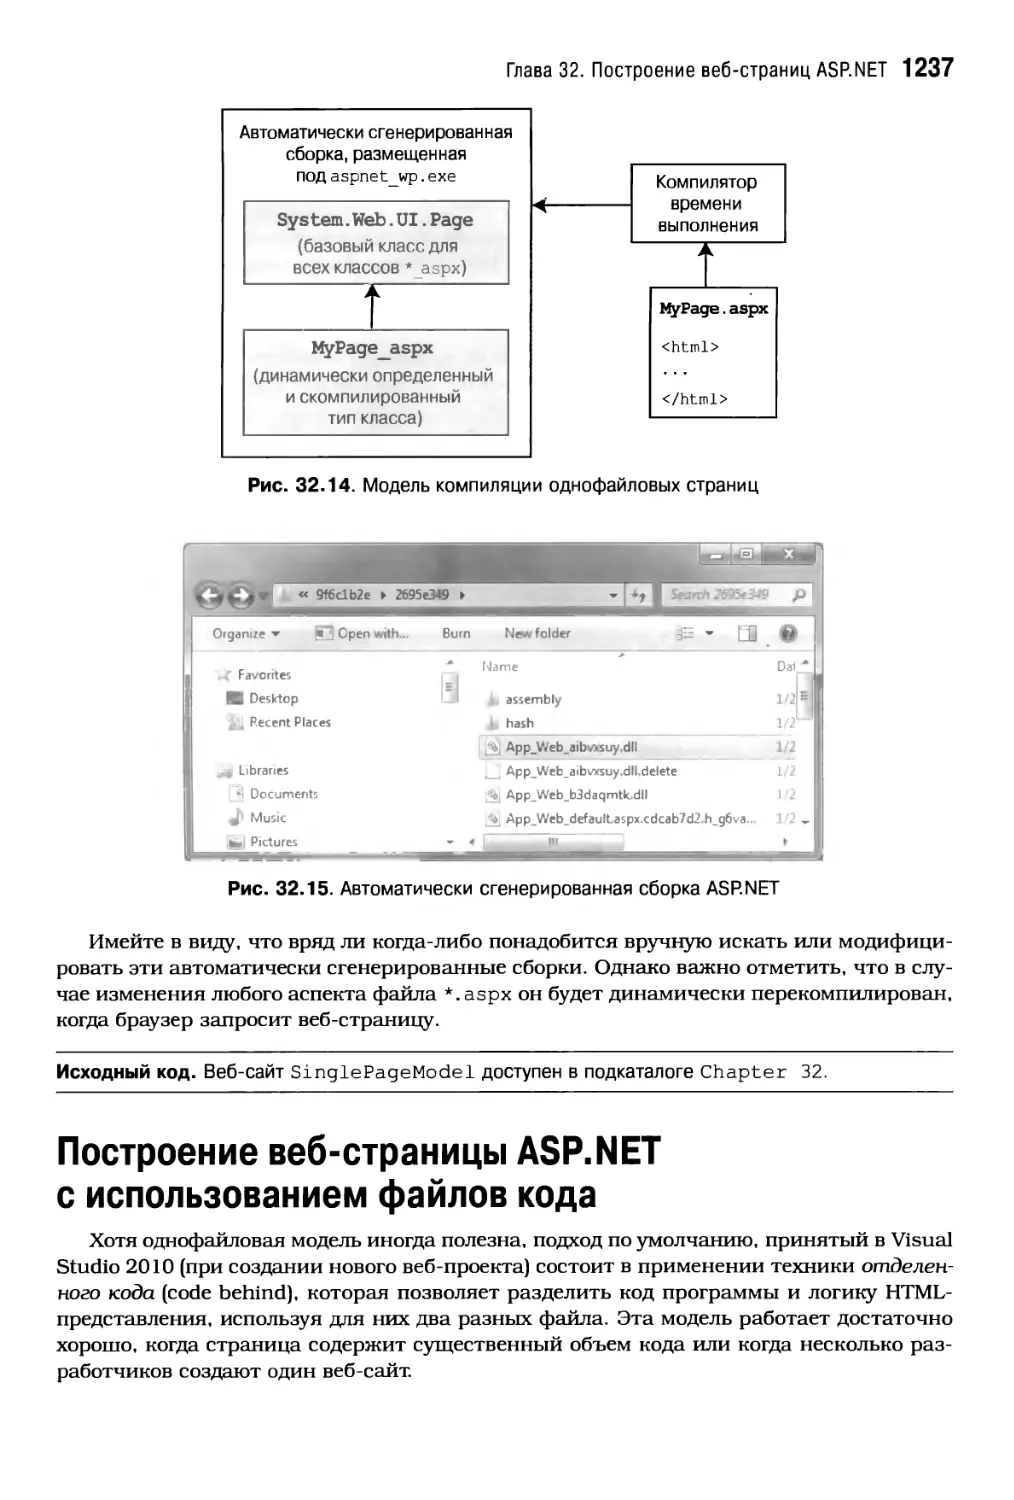 Построение веб-страницы ASP.NET с использованием файлов кода